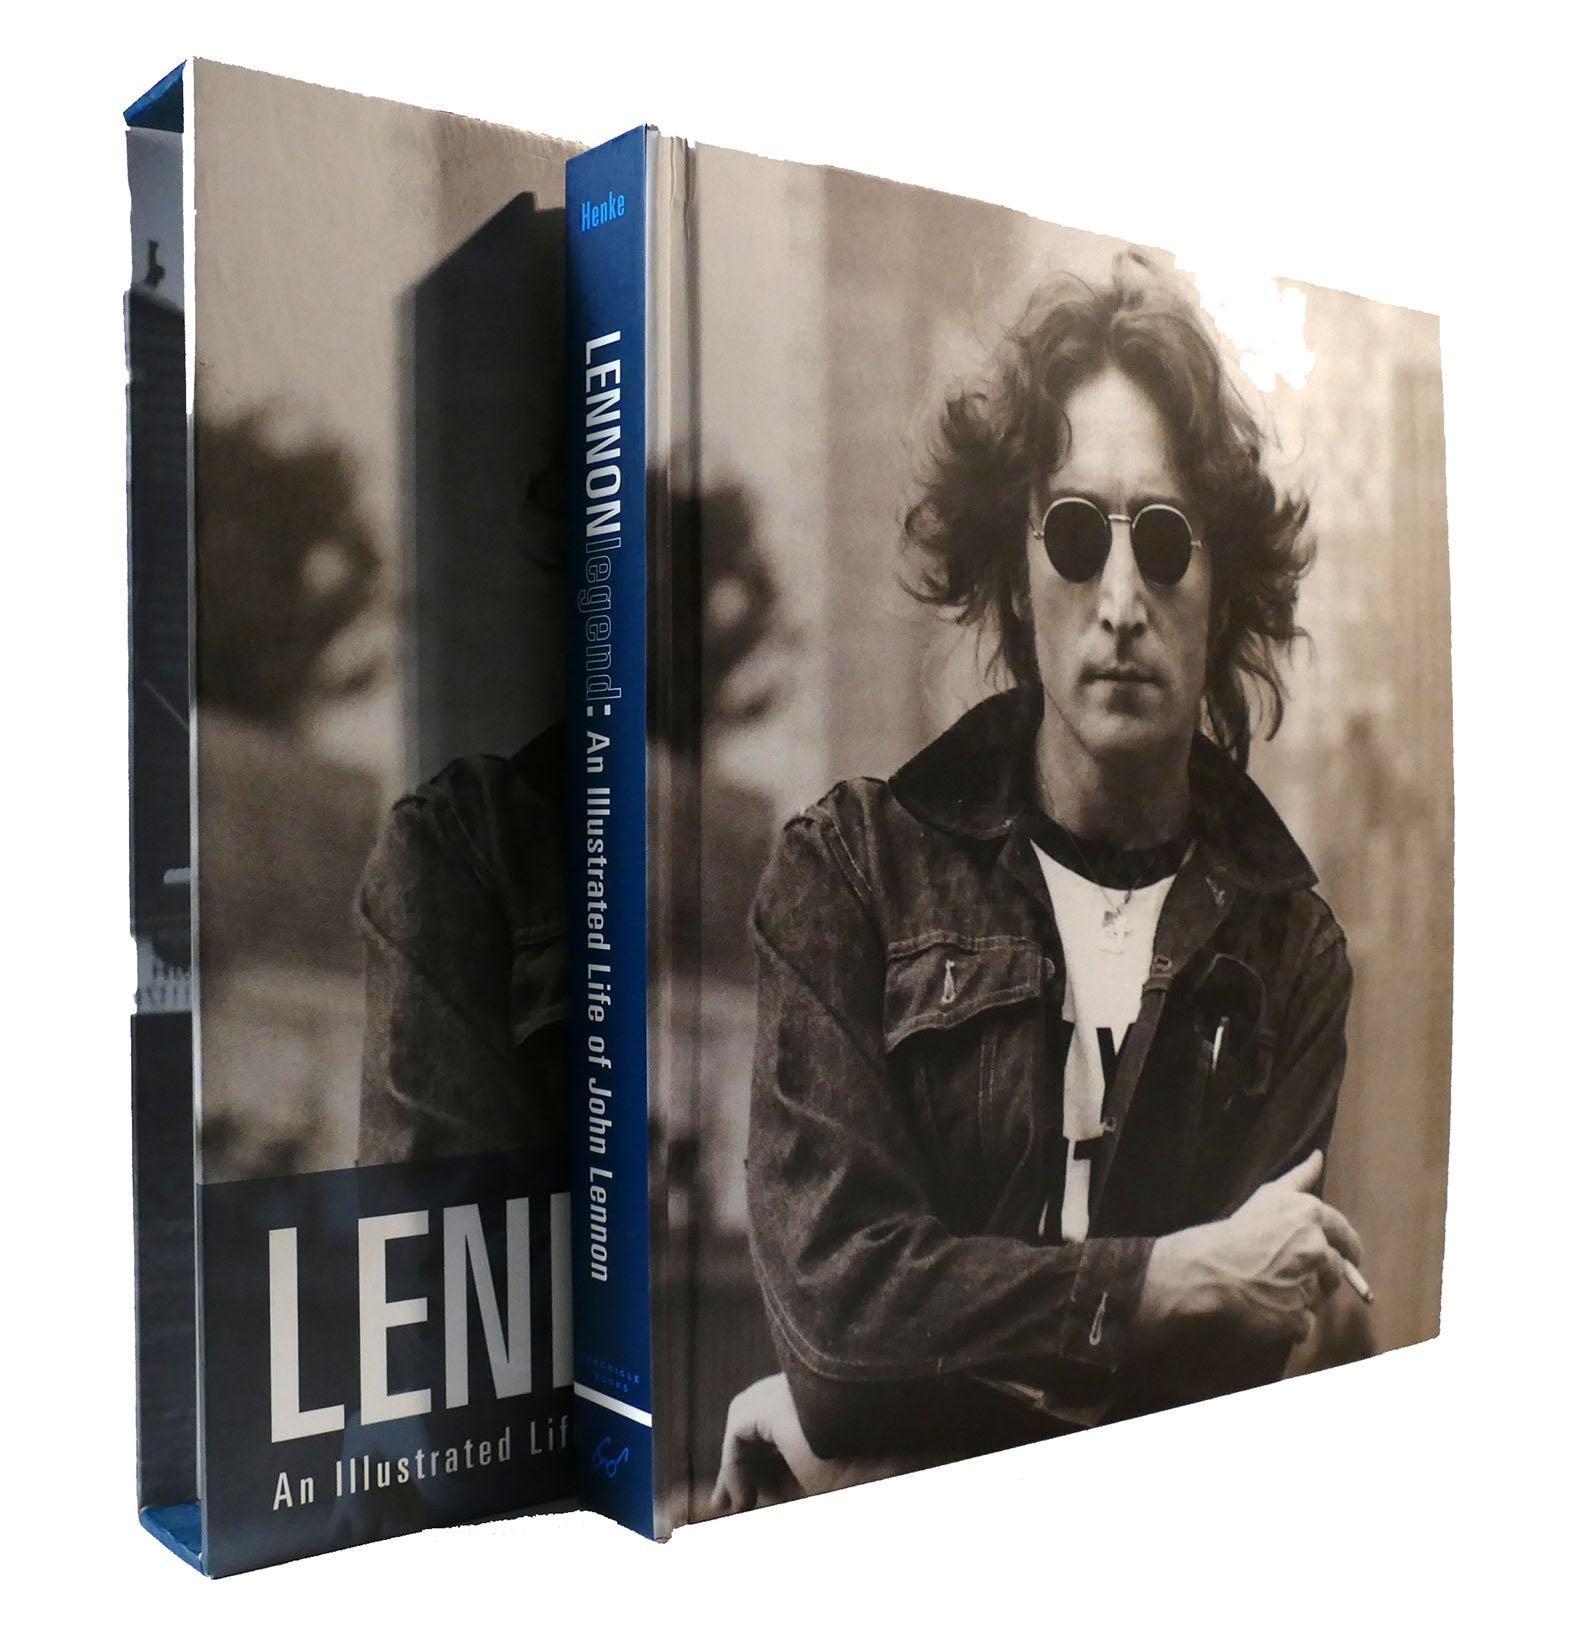 LENNON LEGEND: AN ILLUSTRATED LIFE OF JOHN LENNON The Beatles 